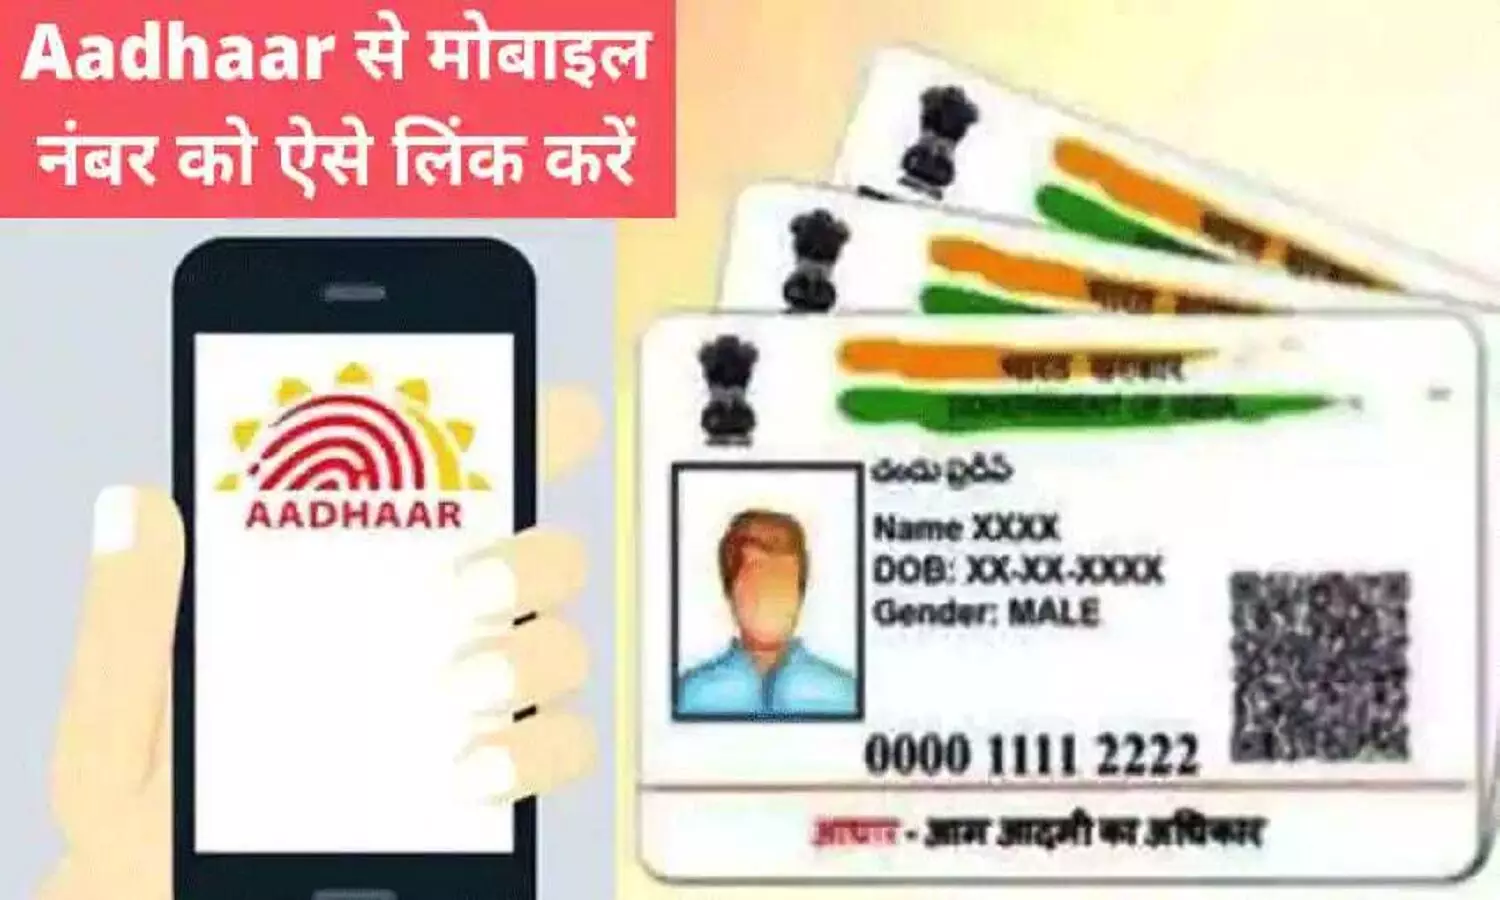 Aadhar Card Number Change: आधार कार्ड में मोबाइल नंबर बदलना हुआ आसान, आइए जानें क्या है सरल विधि